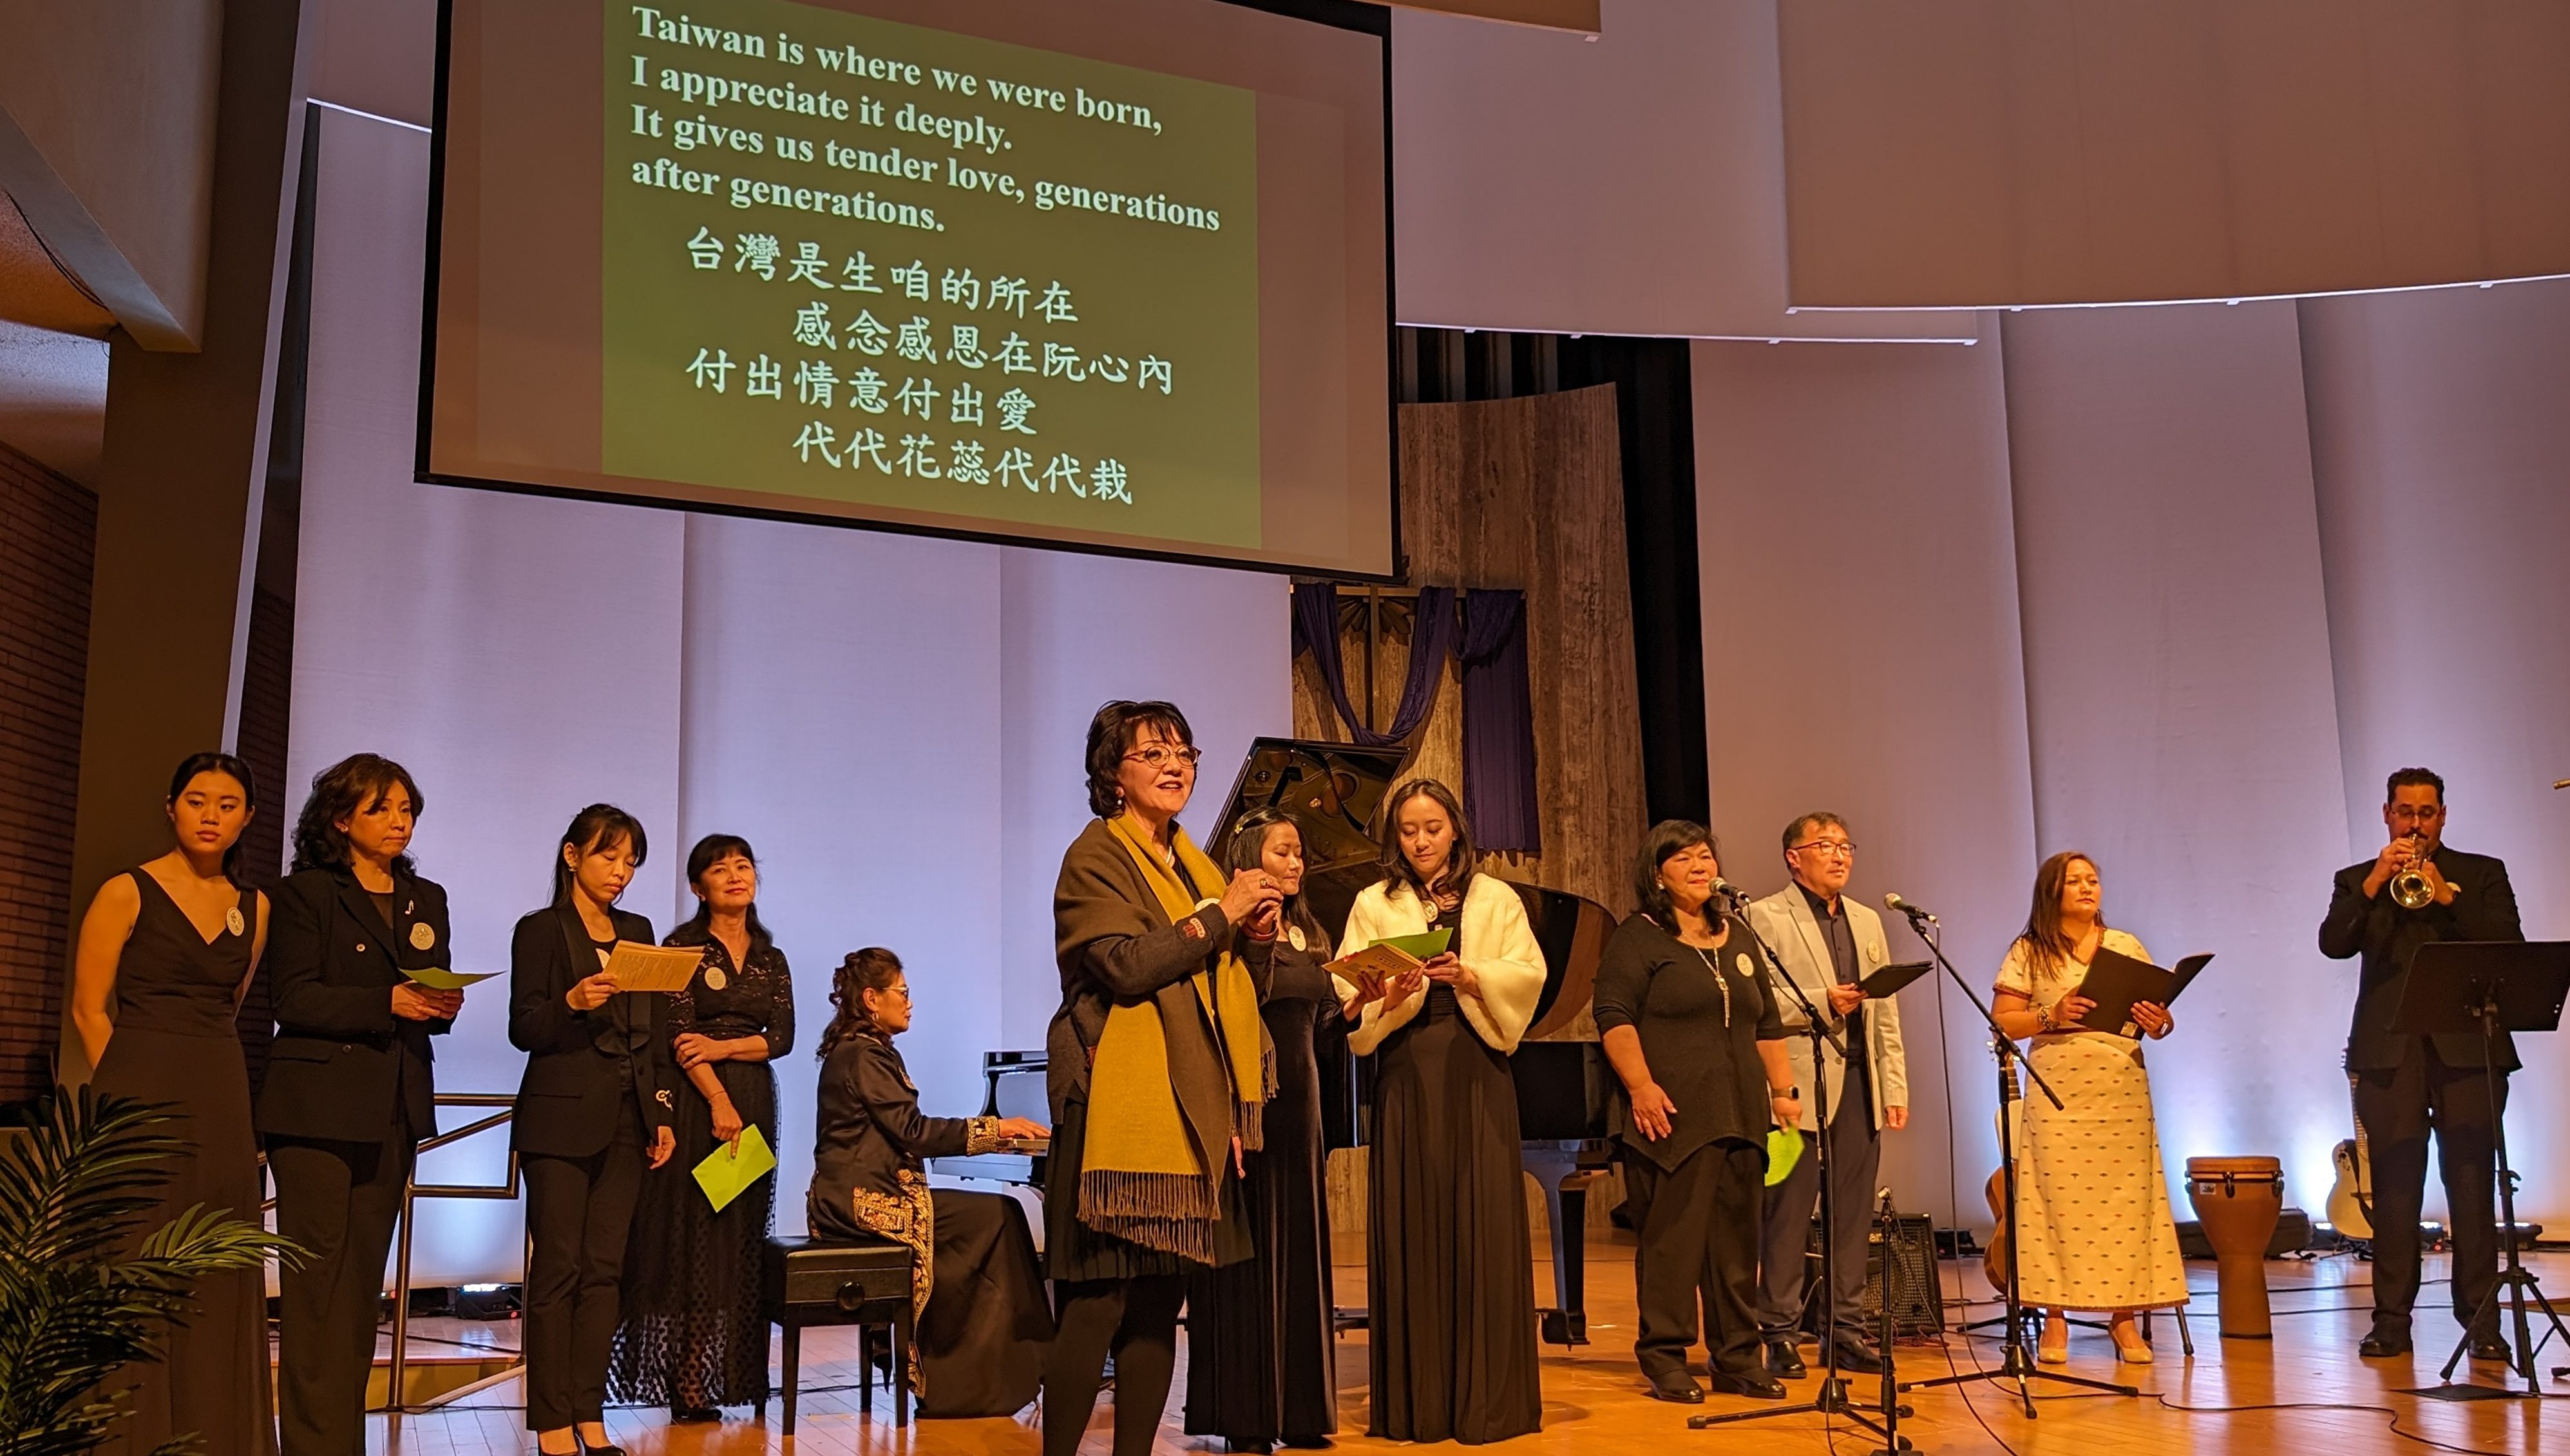 228台灣介心靈日音樂會 眾人合唱《台灣》